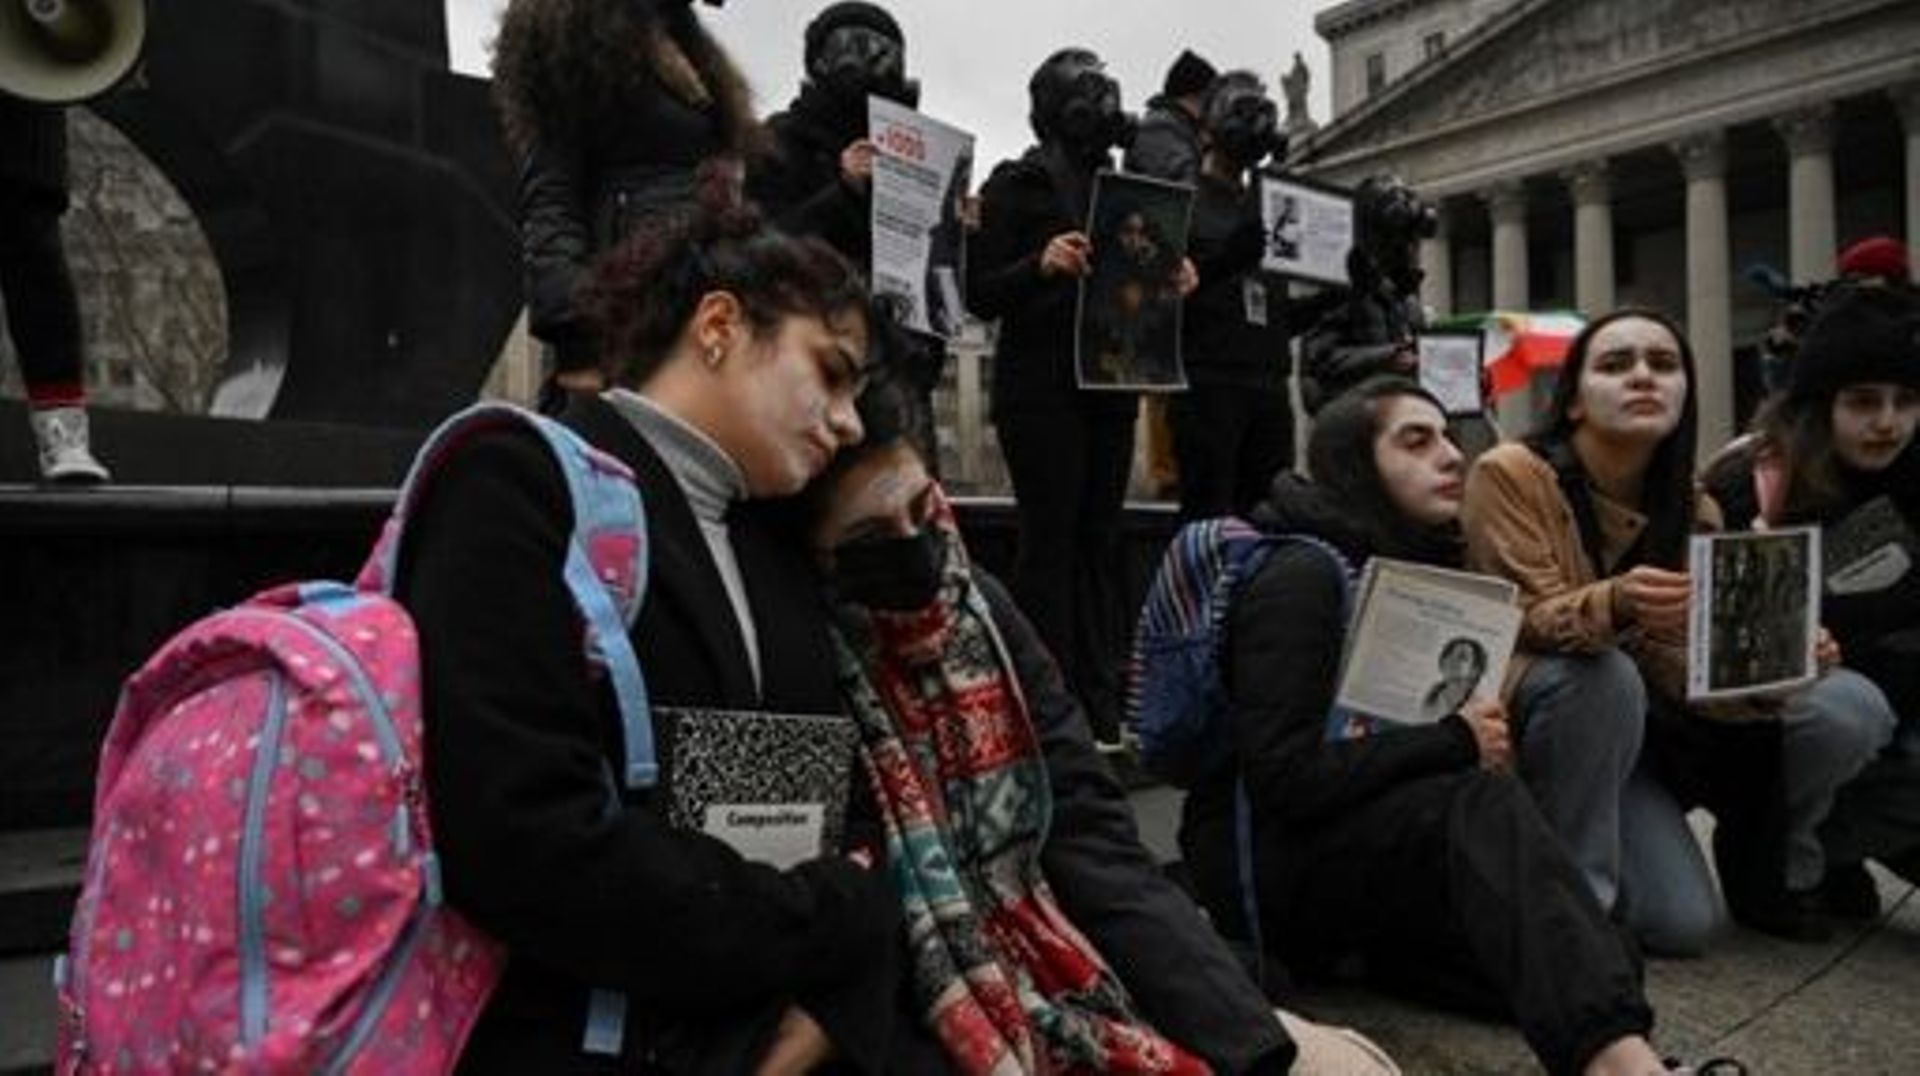 Des activistes du groupe Woman Life Freedom, un groupe de défense des droits des femmes iraniennes basé à New York, participent à un rassemblement condamnant l'empoisonnement massif d'étudiantes iraniennes, à New York, le 11 mars 2023.